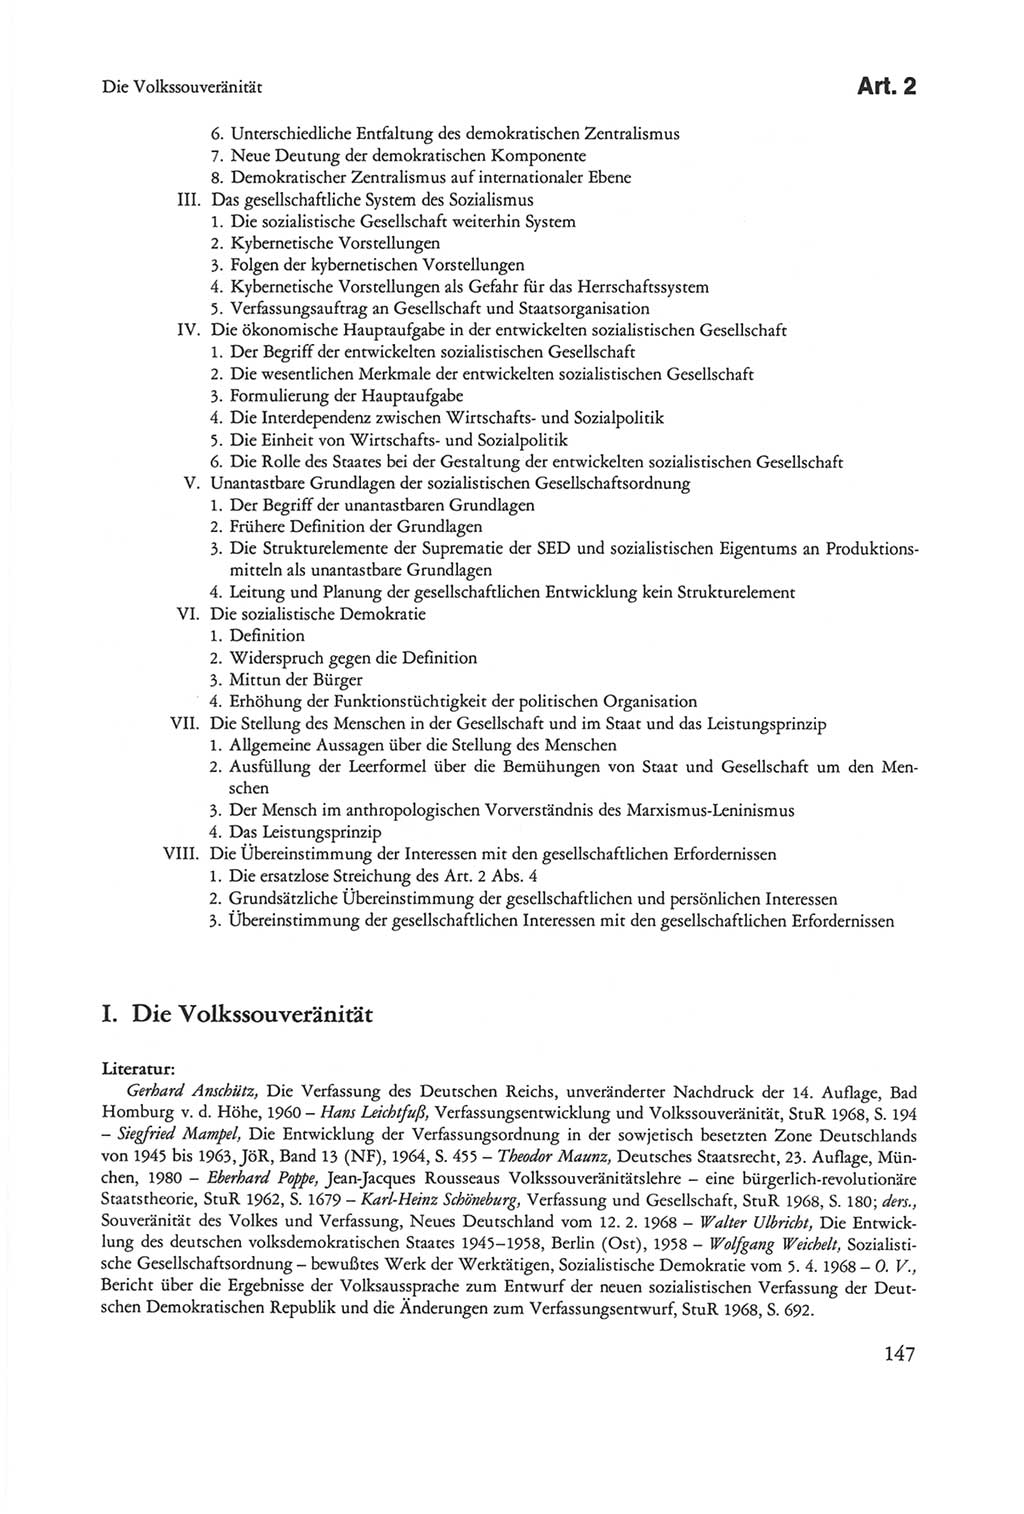 Die sozialistische Verfassung der Deutschen Demokratischen Republik (DDR), Kommentar mit einem Nachtrag 1997, Seite 147 (Soz. Verf. DDR Komm. Nachtr. 1997, S. 147)